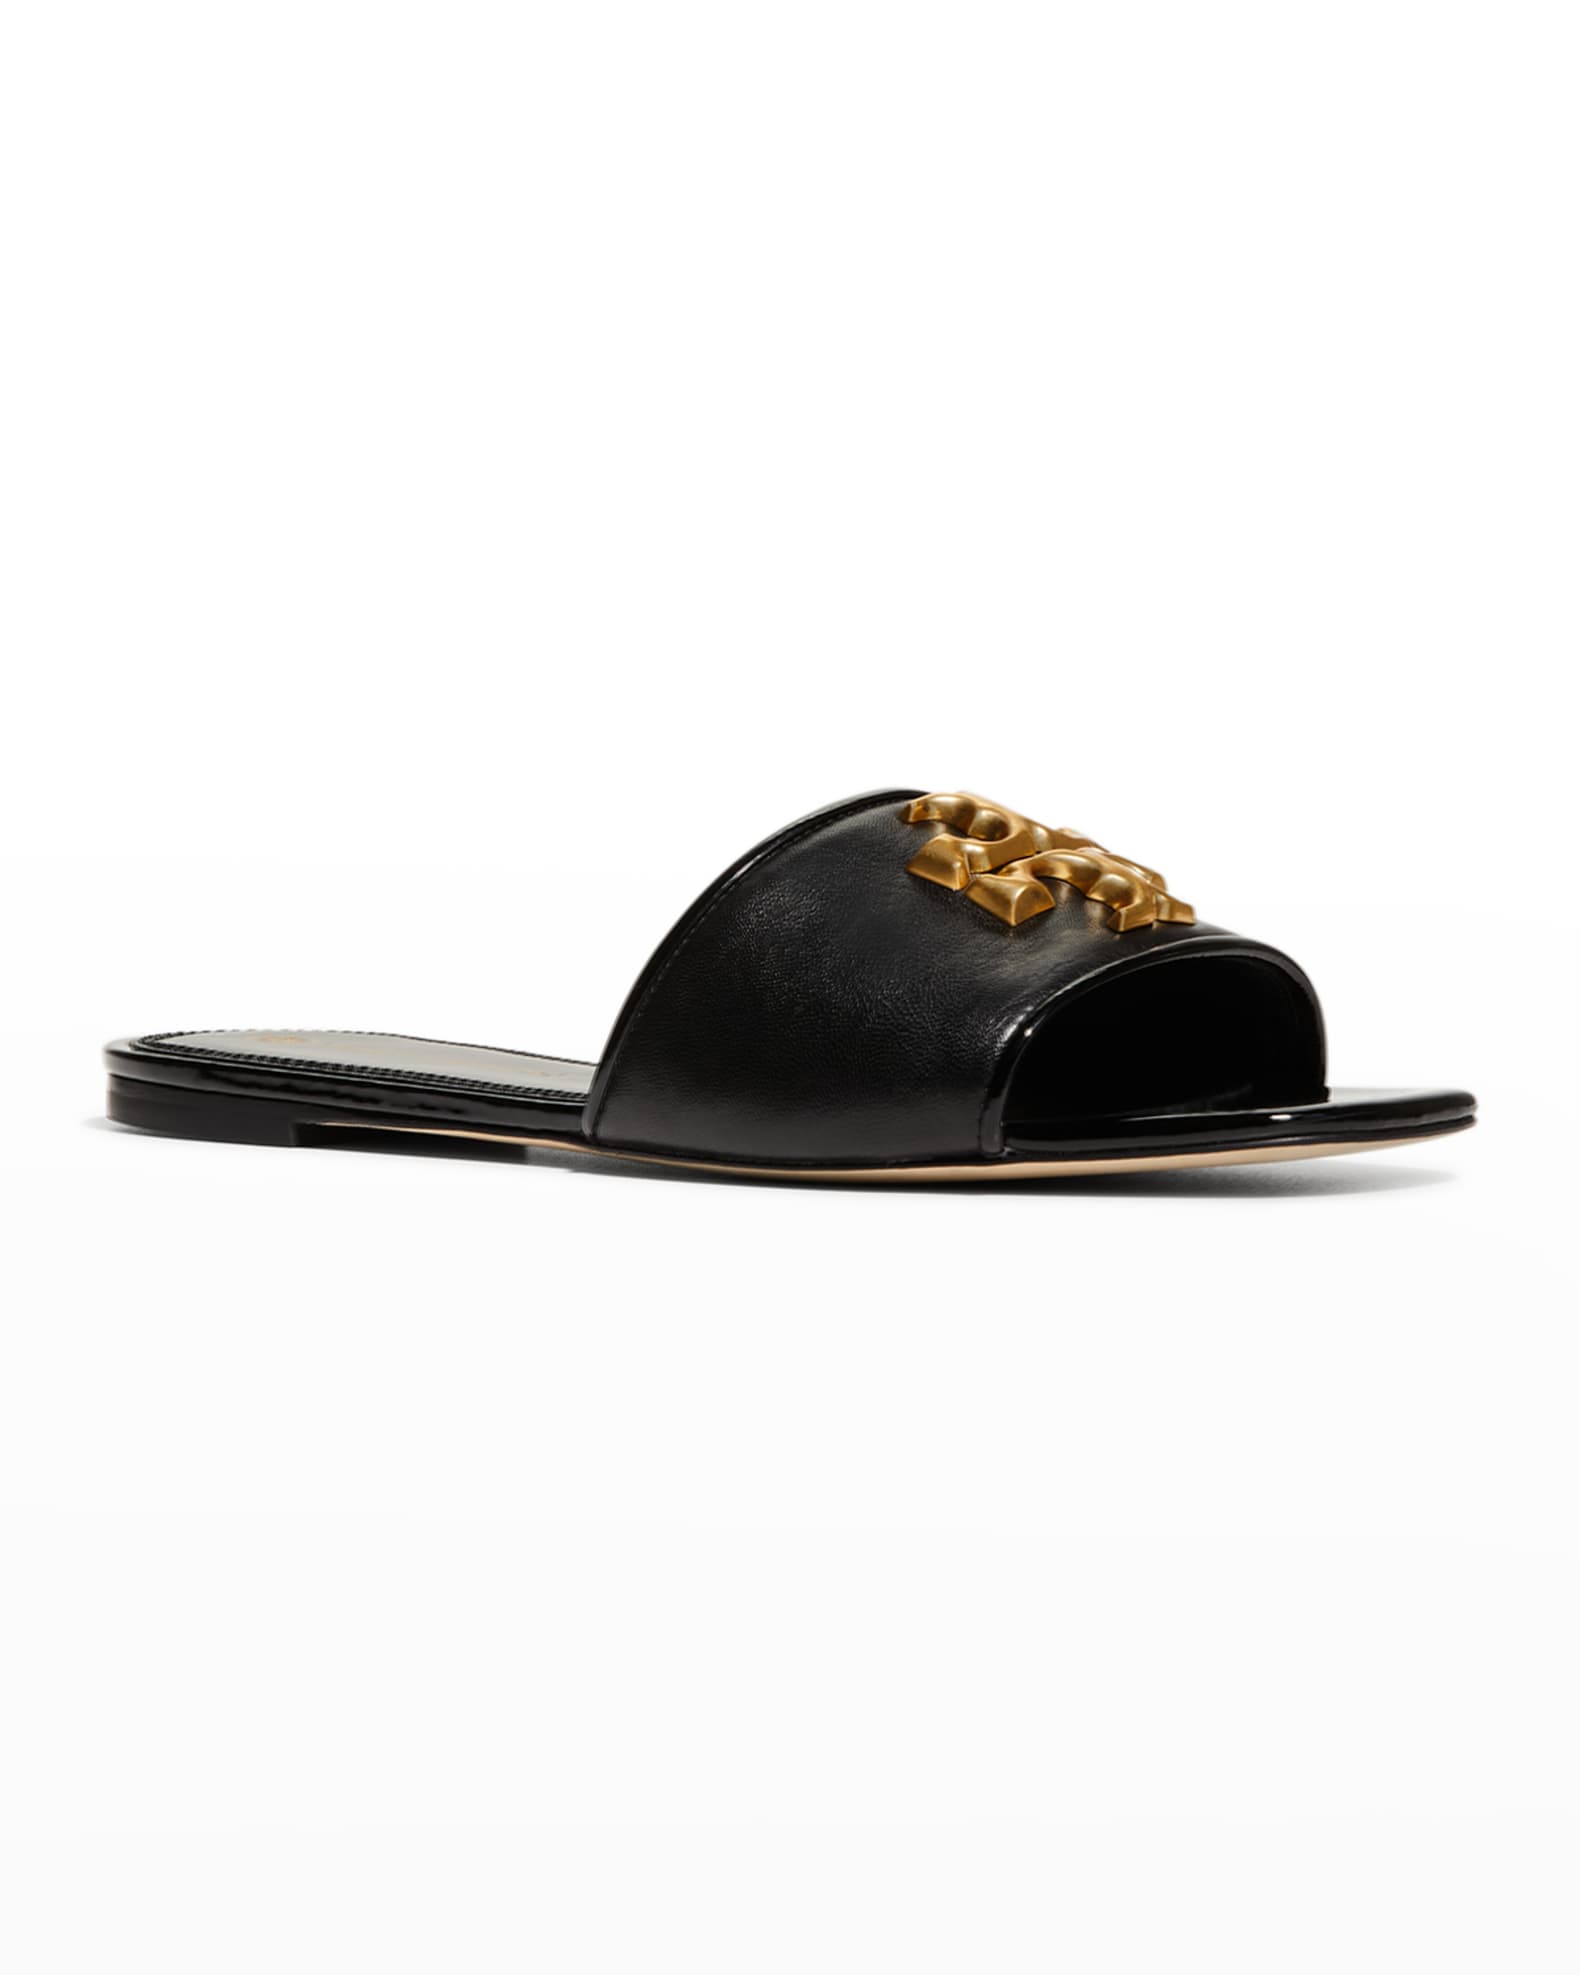 Tory Burch Eleanor Calfskin Medallion Flat Sandals | Neiman Marcus